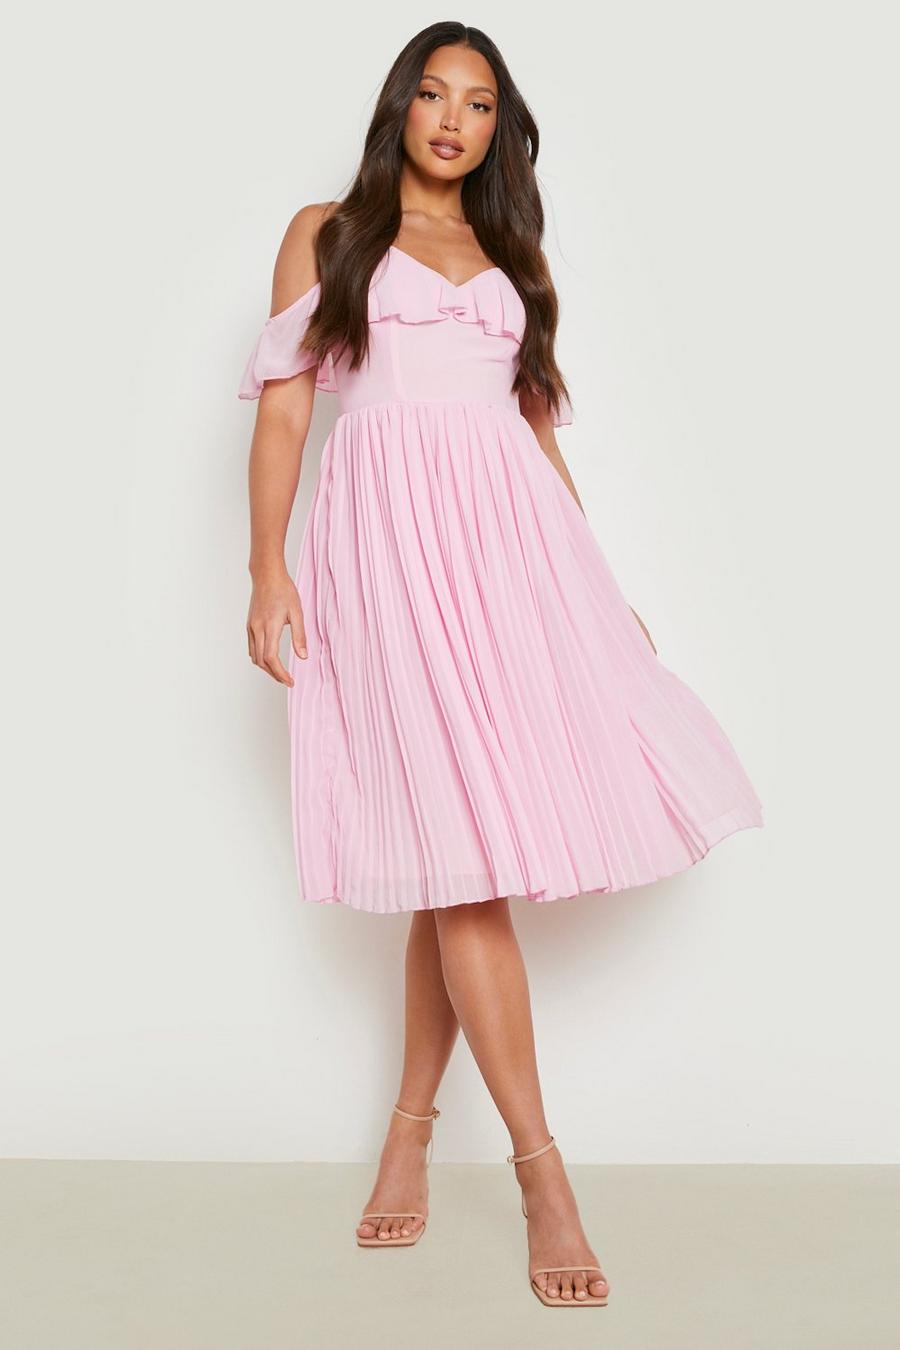 Blush pink Tall Cold Shoulder Bridesmaid Dress